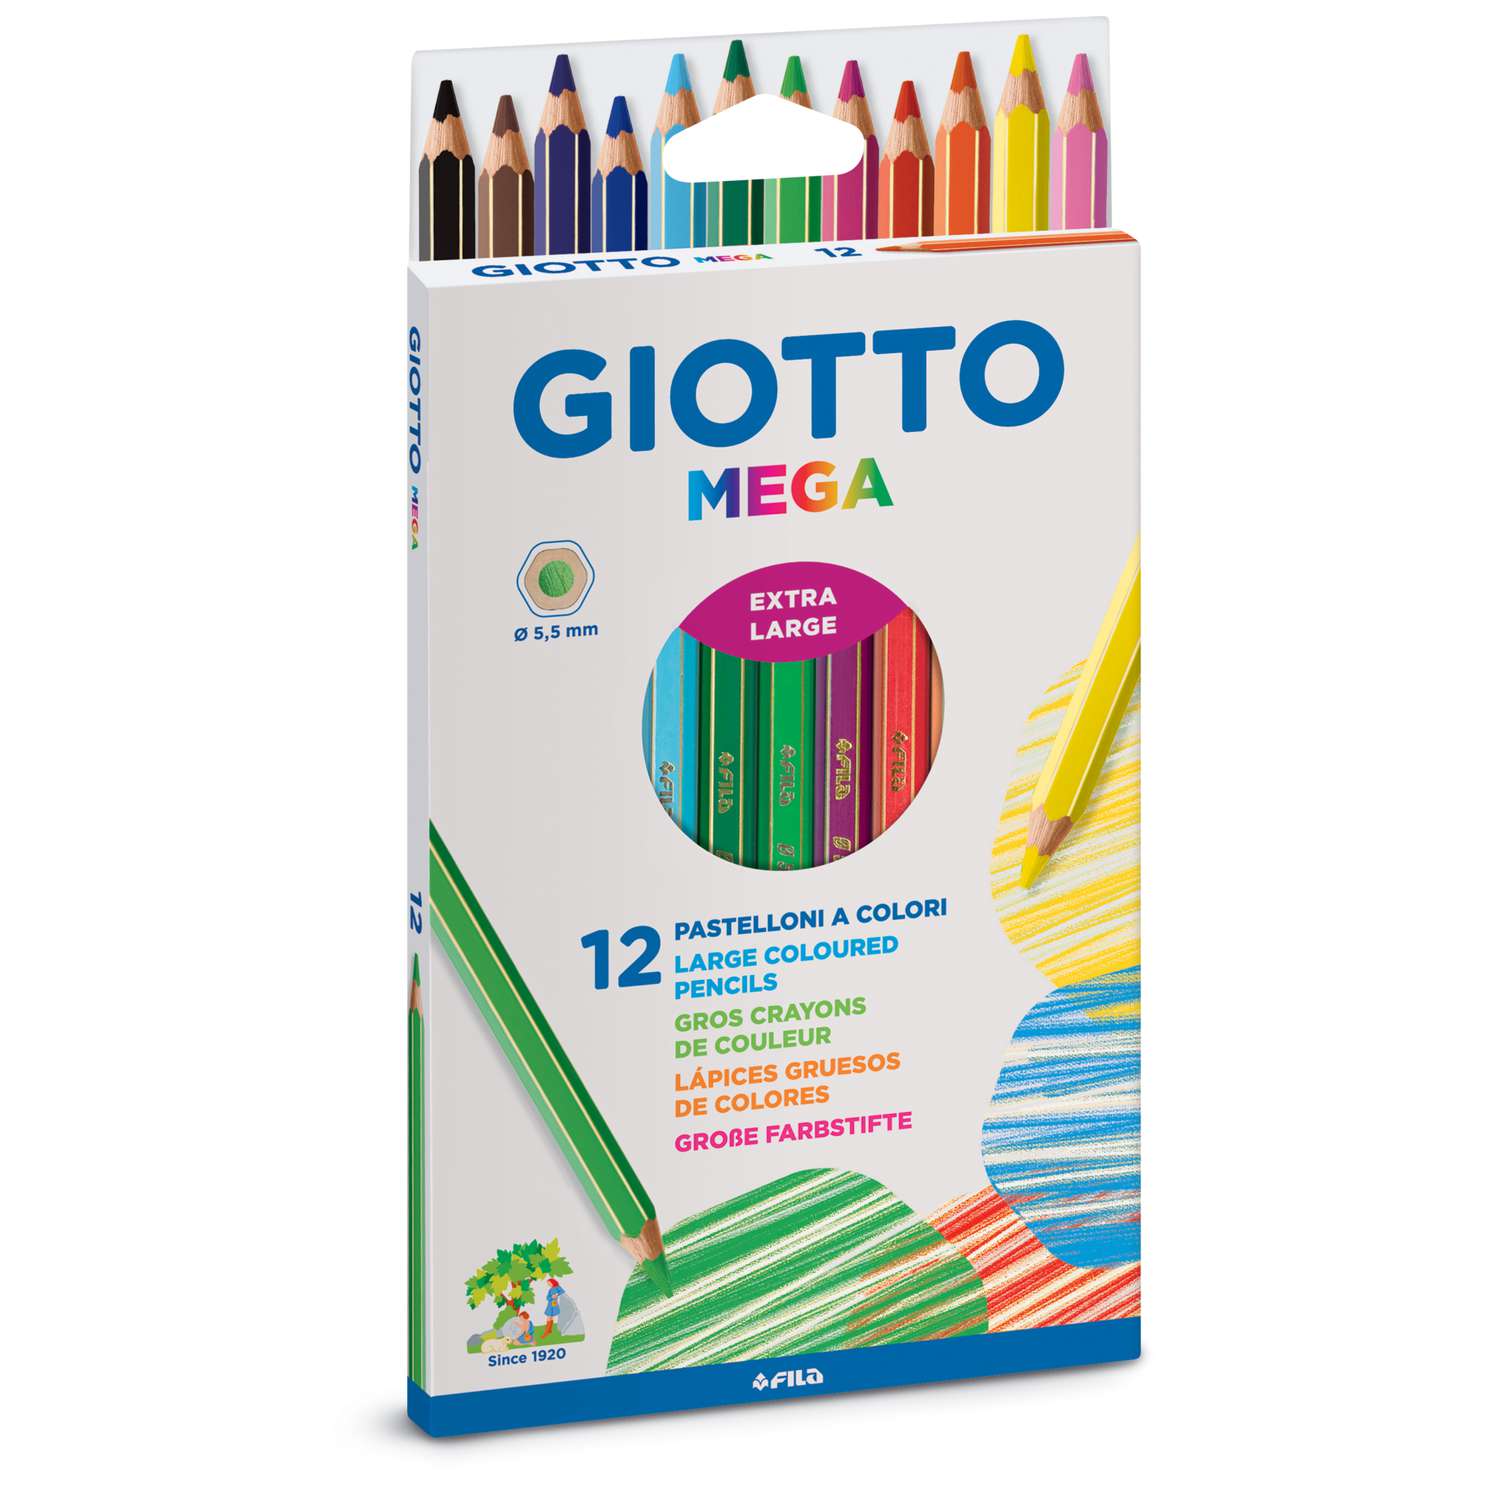 Super crayons de couleur GIOTTO : Comparateur, Avis, Prix